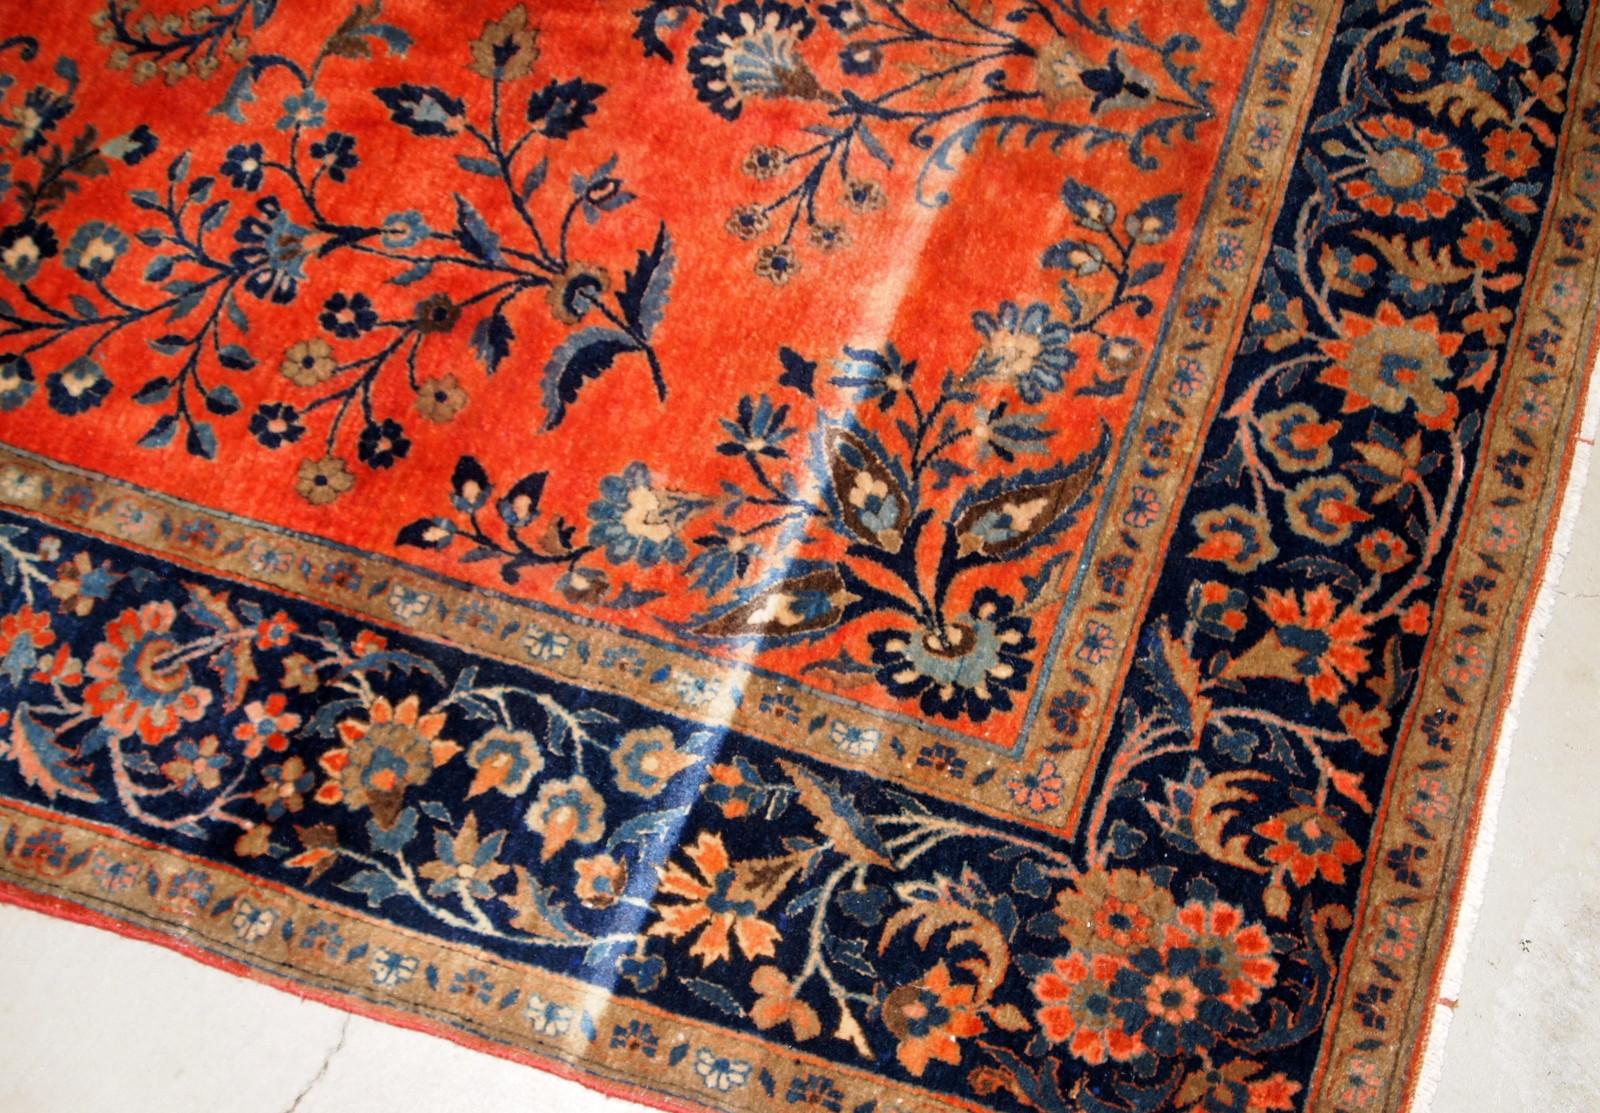 Handgefertigter antiker Sarouk-Teppich in gutem Originalzustand. Der Teppich wurde zu Beginn des 20. Jahrhunderts aus leuchtend roter Wolle hergestellt.

?-Zustand: original gut,

-um: 1920er Jahre,

-größe: 4' x 6.8' (122cm x